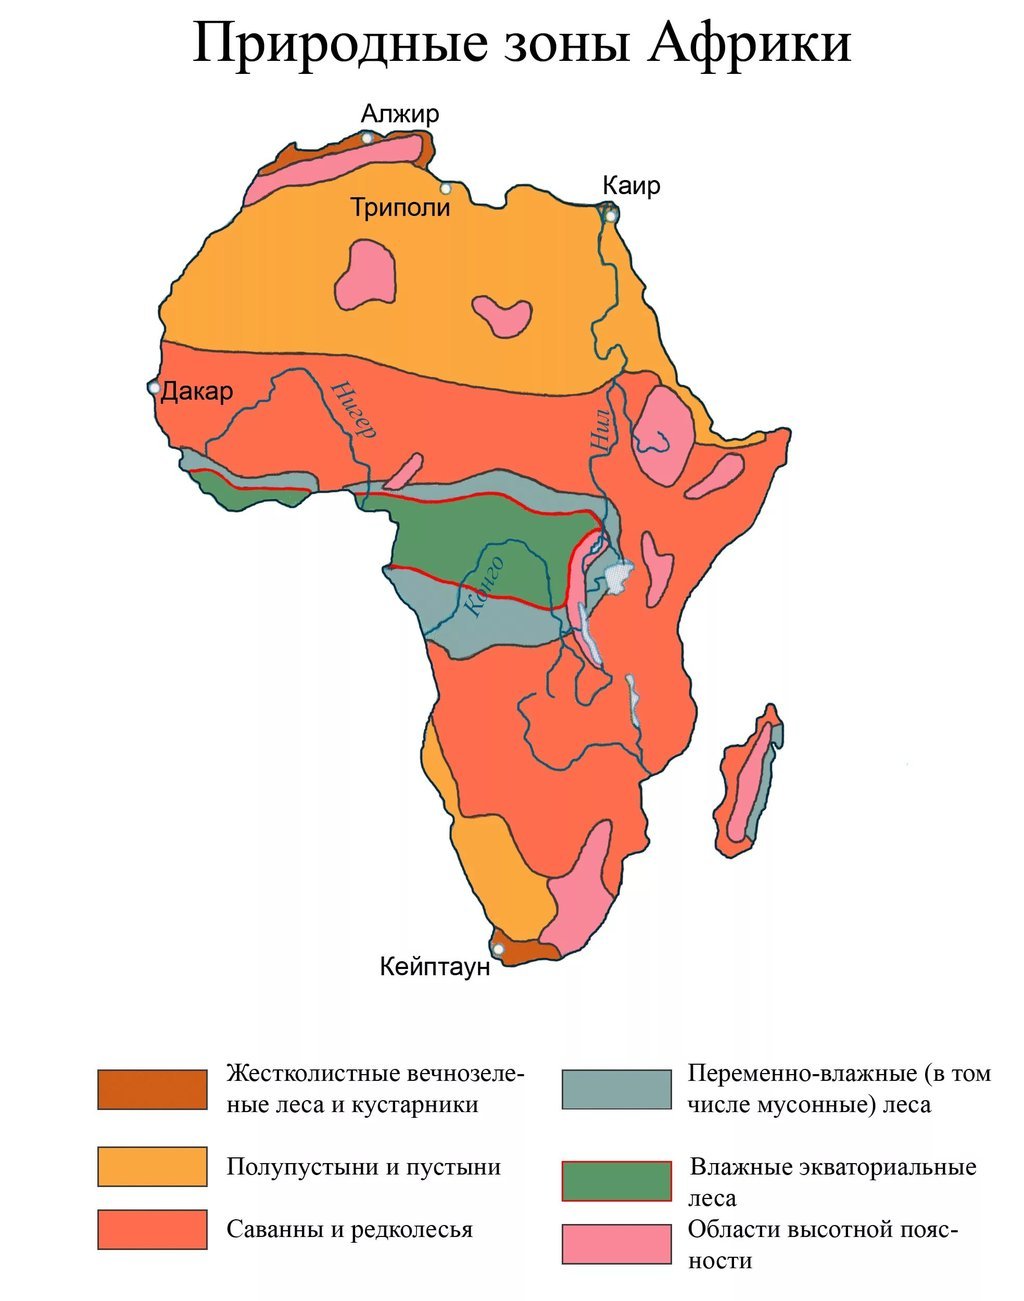 Занимает обширные равнины африки природная зона. Карта природных зон Африки. Карта климатических зон Африки. Природная зона тропического пояса Африки. Зона саванн и редколесий в Африке на карте.